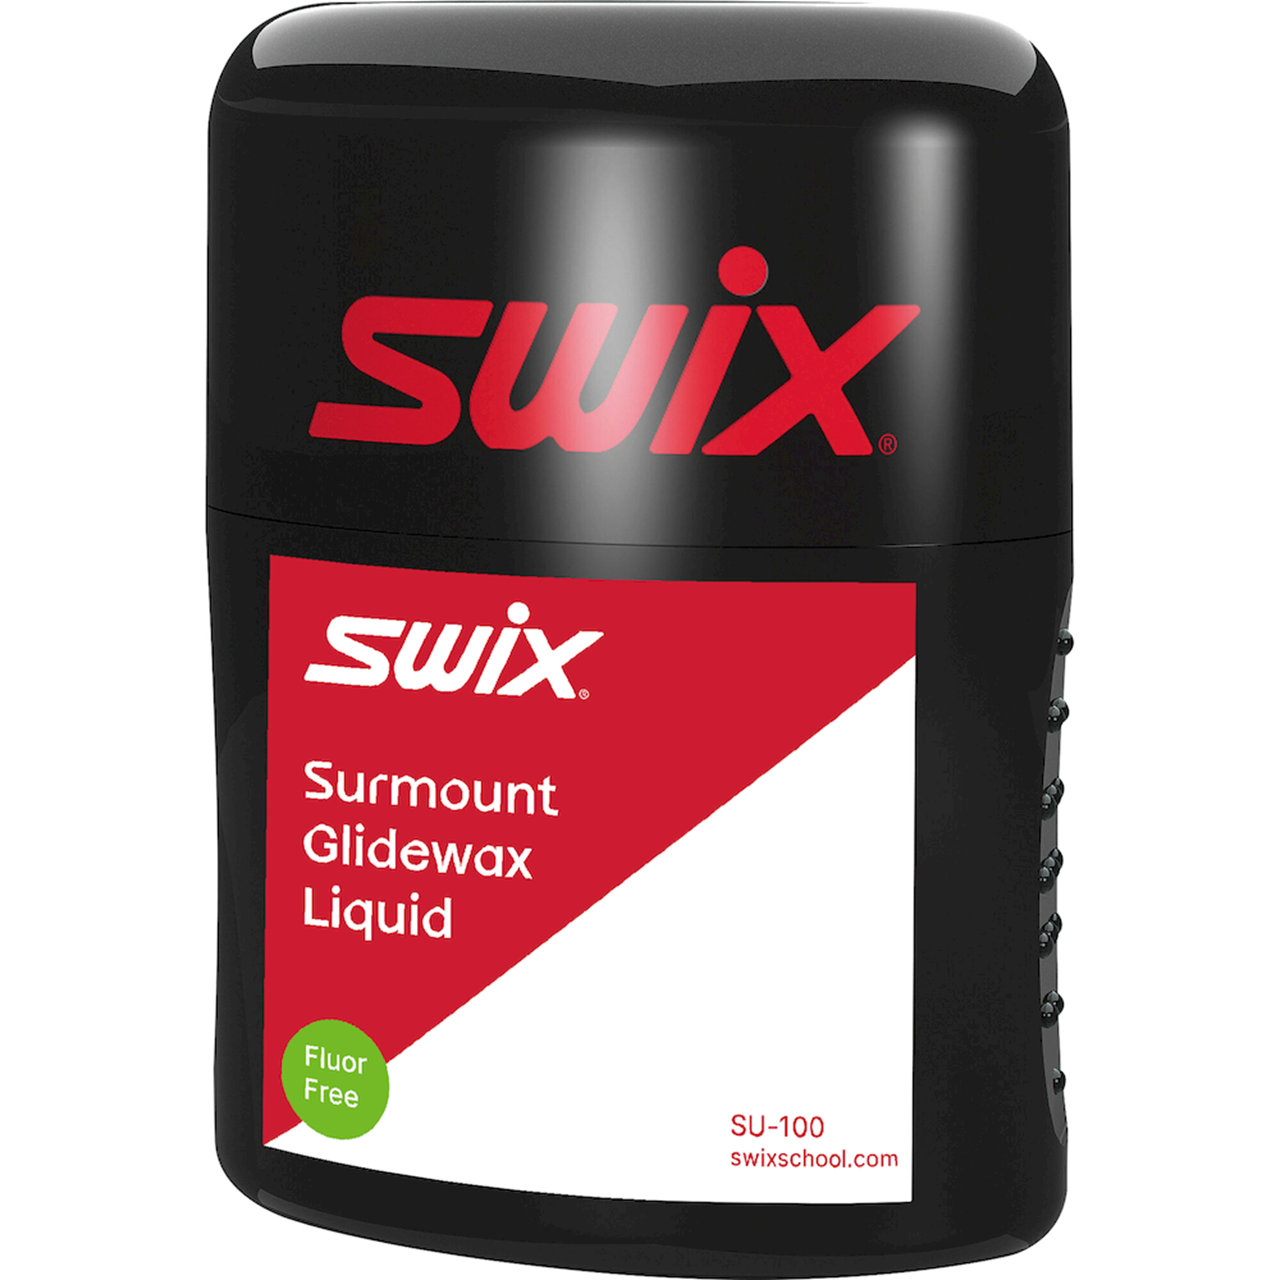 SWIX Surmount Glidewax 100ml, Liquid